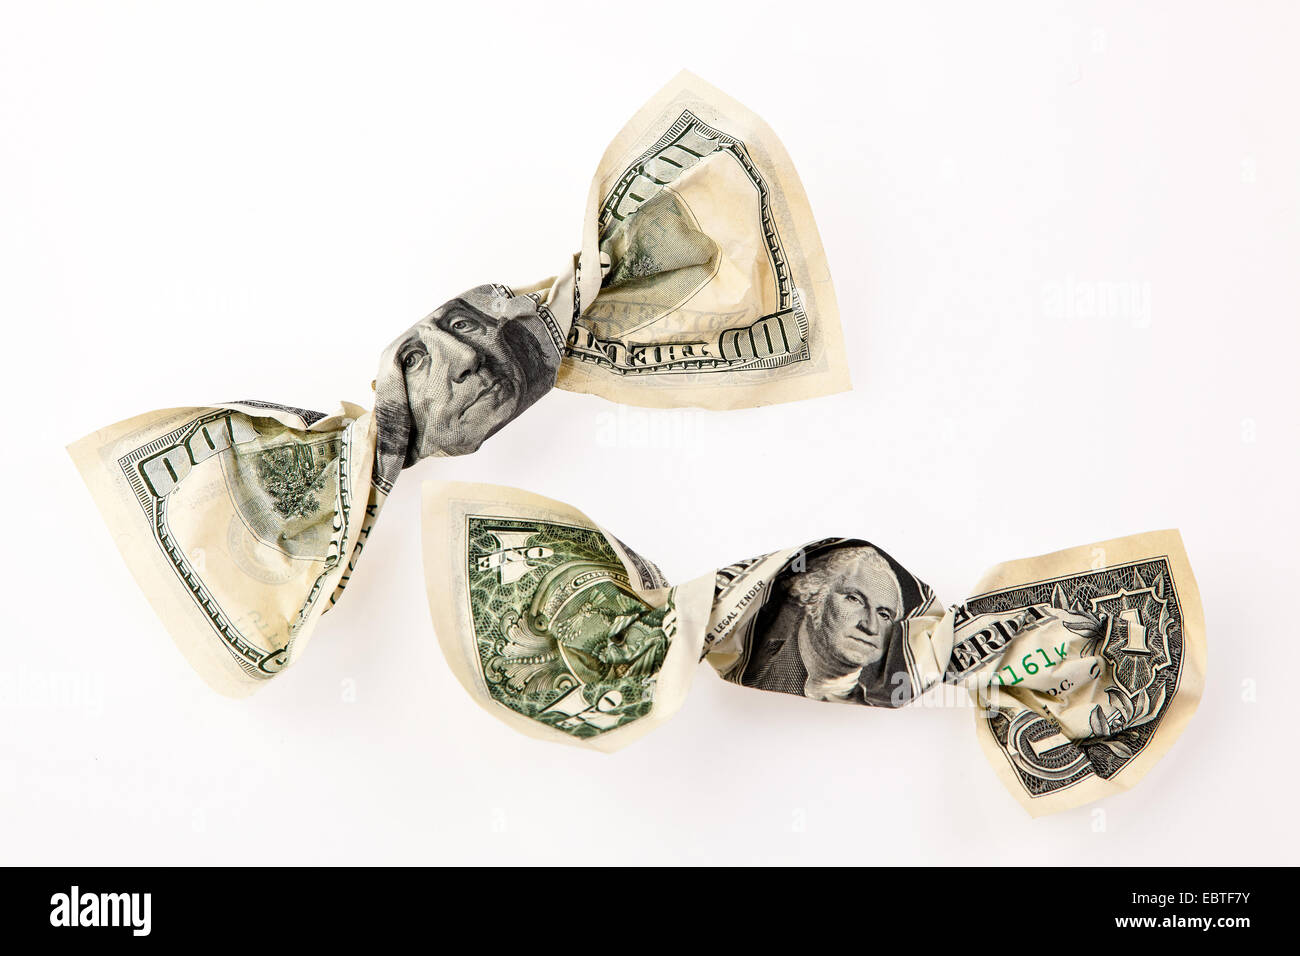 Bonbons enveloppés dans des dollars symbolisant la réduction d'impôt comme une promesse pendant la campagne électorale, USA Banque D'Images